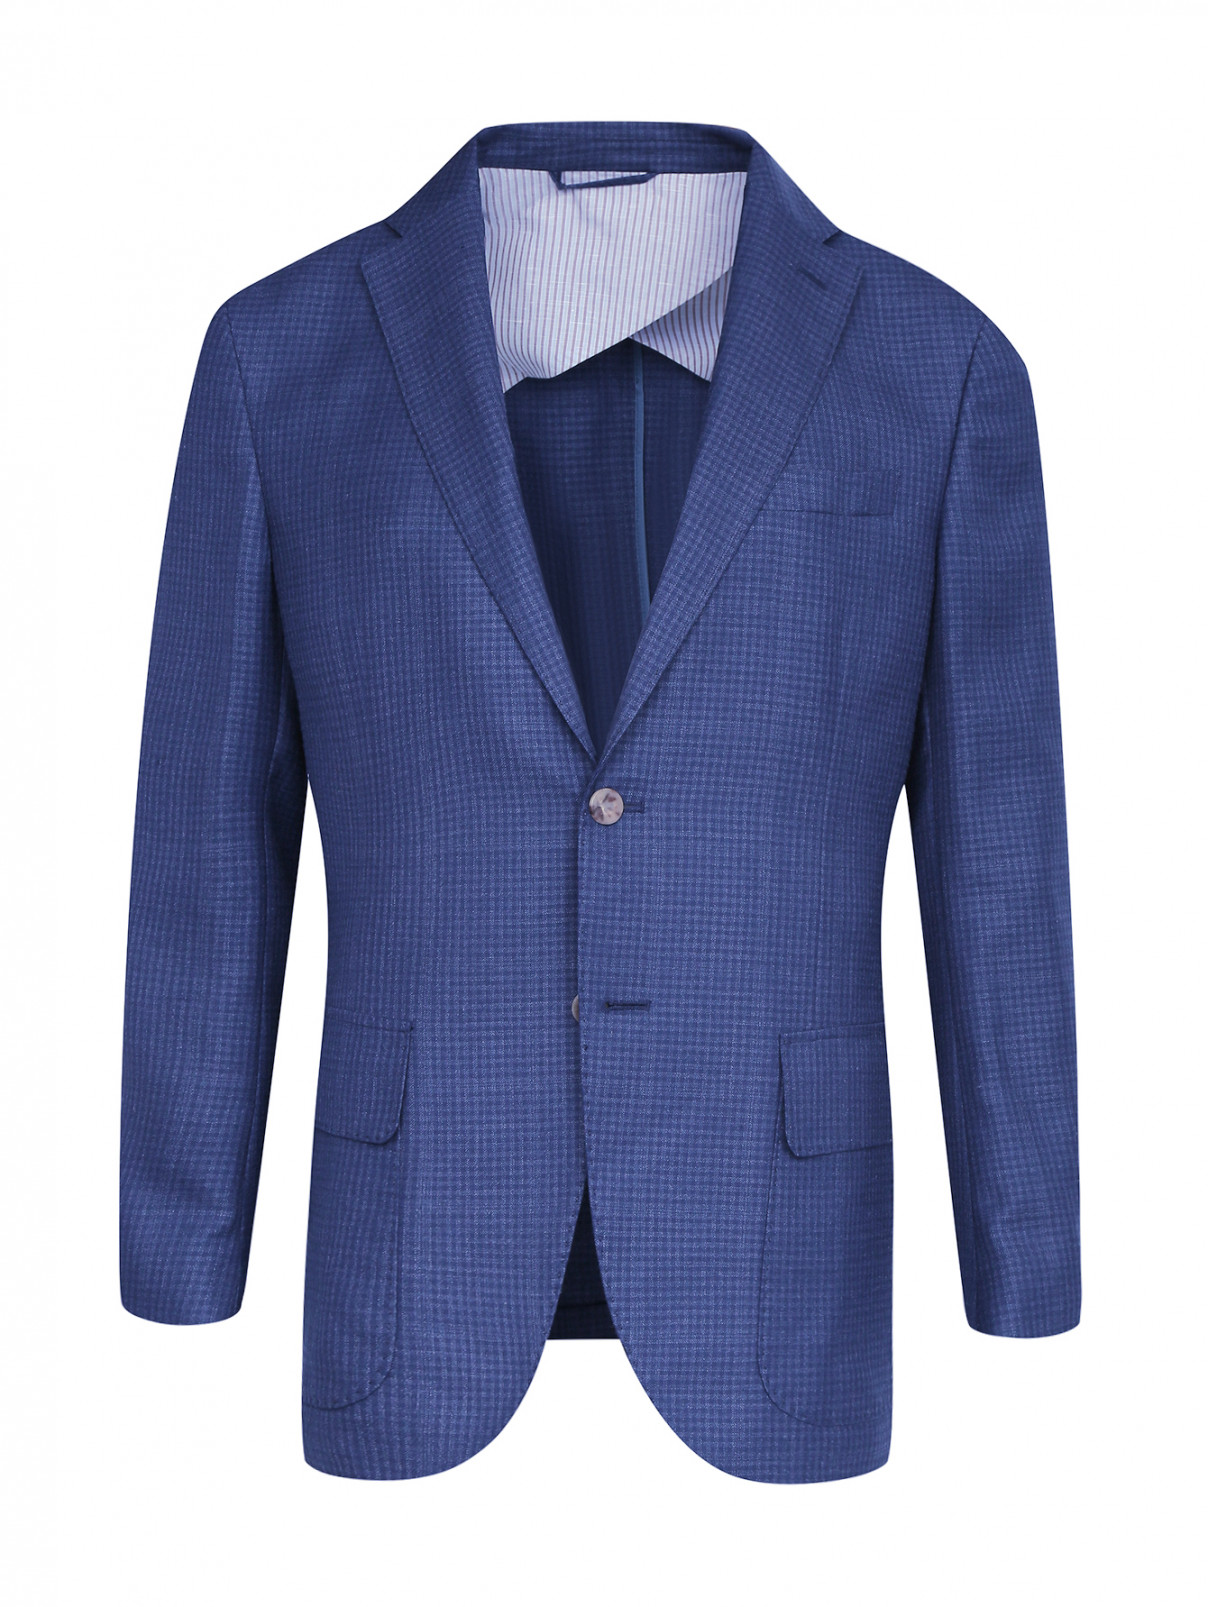 Пиджак из шерсти и льна Luciano Barbera  –  Общий вид  – Цвет:  Синий